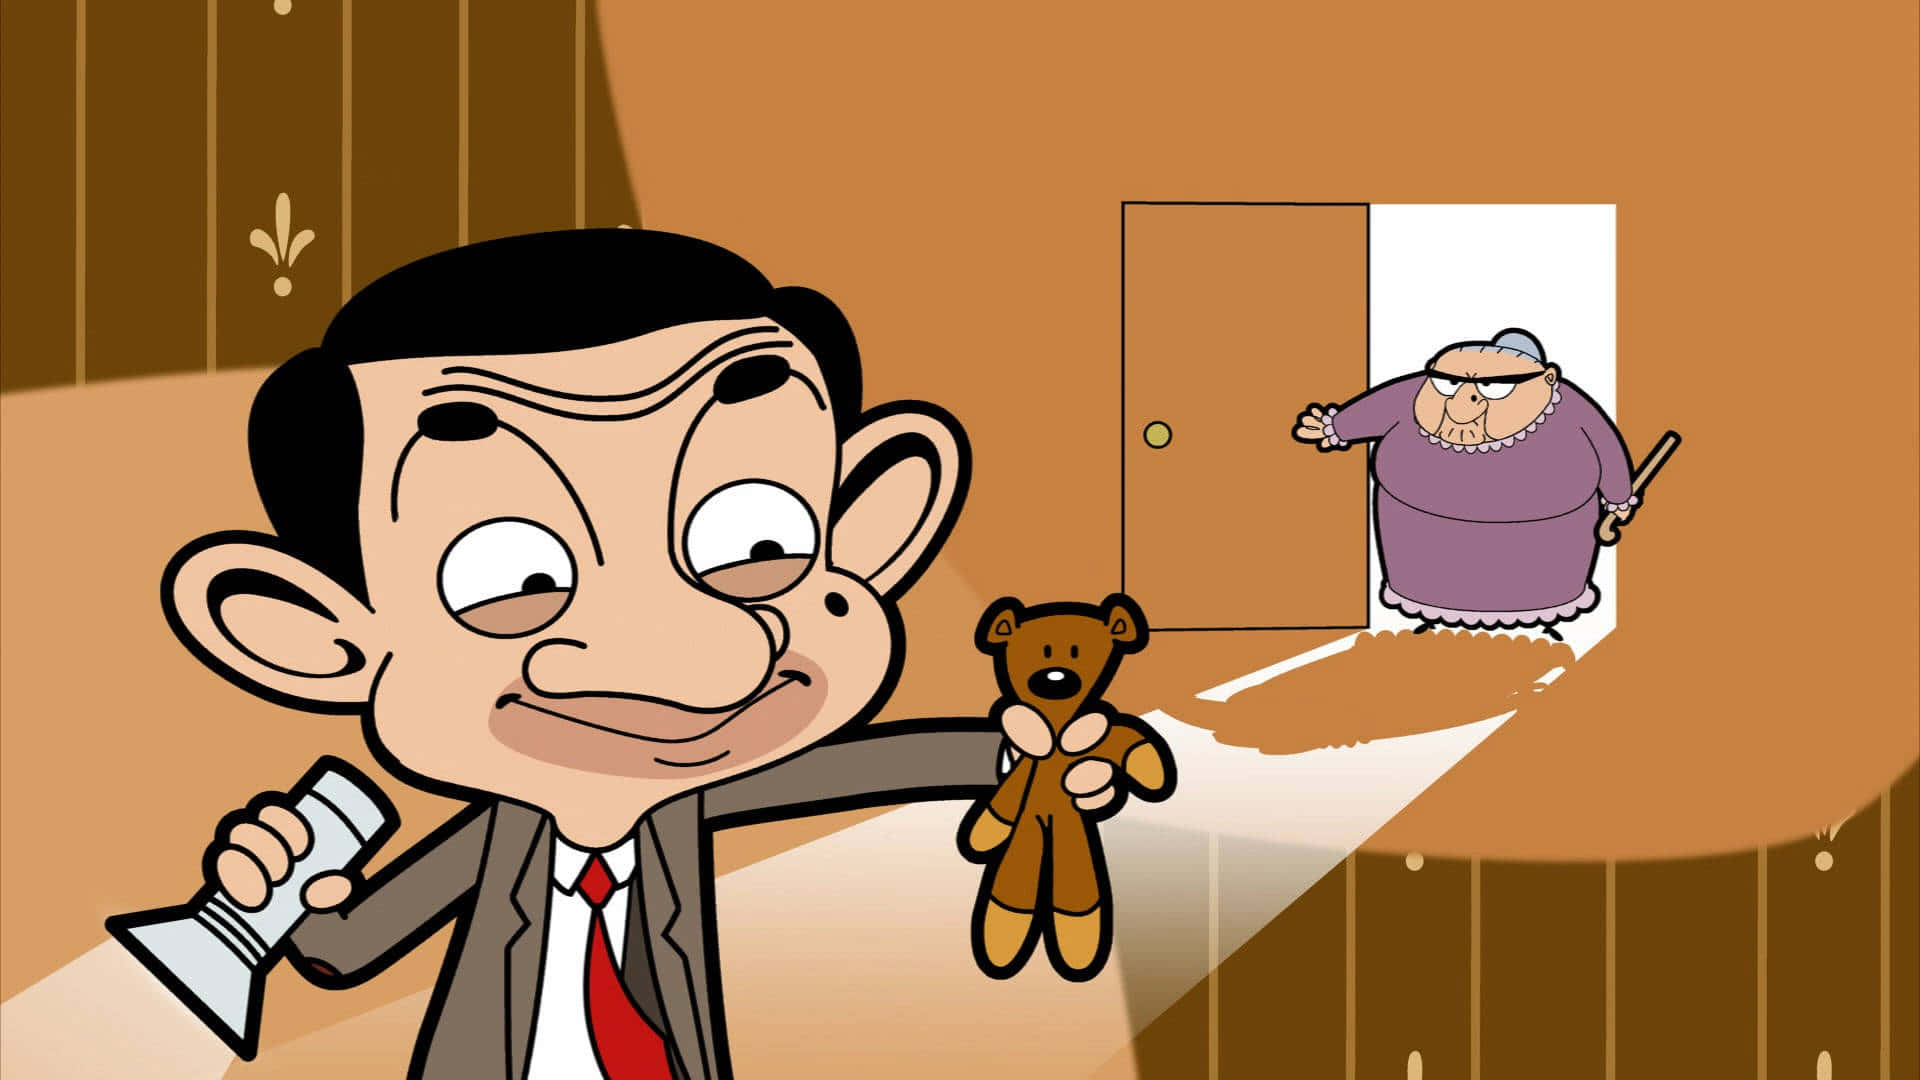 Hilarious Mr. Bean in his signature pose